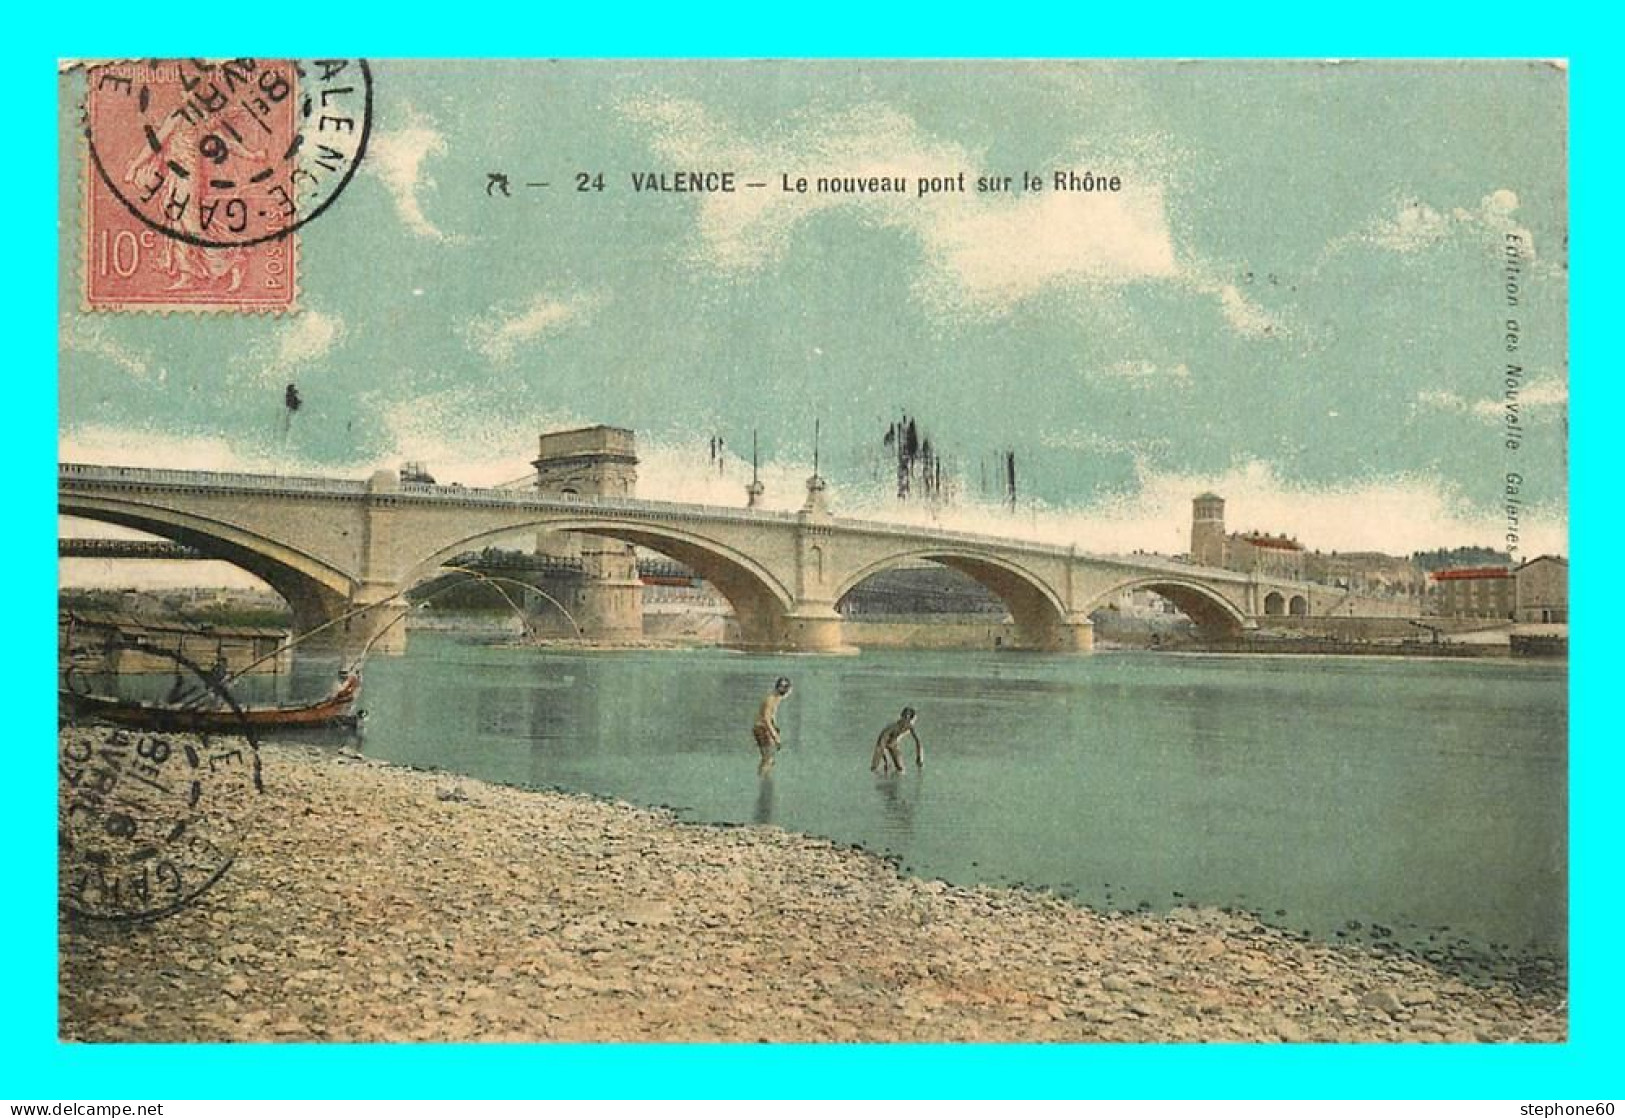 A878 / 357 26 - VALENCE Le Nouveau Pont Sur Le Rhone - Valence